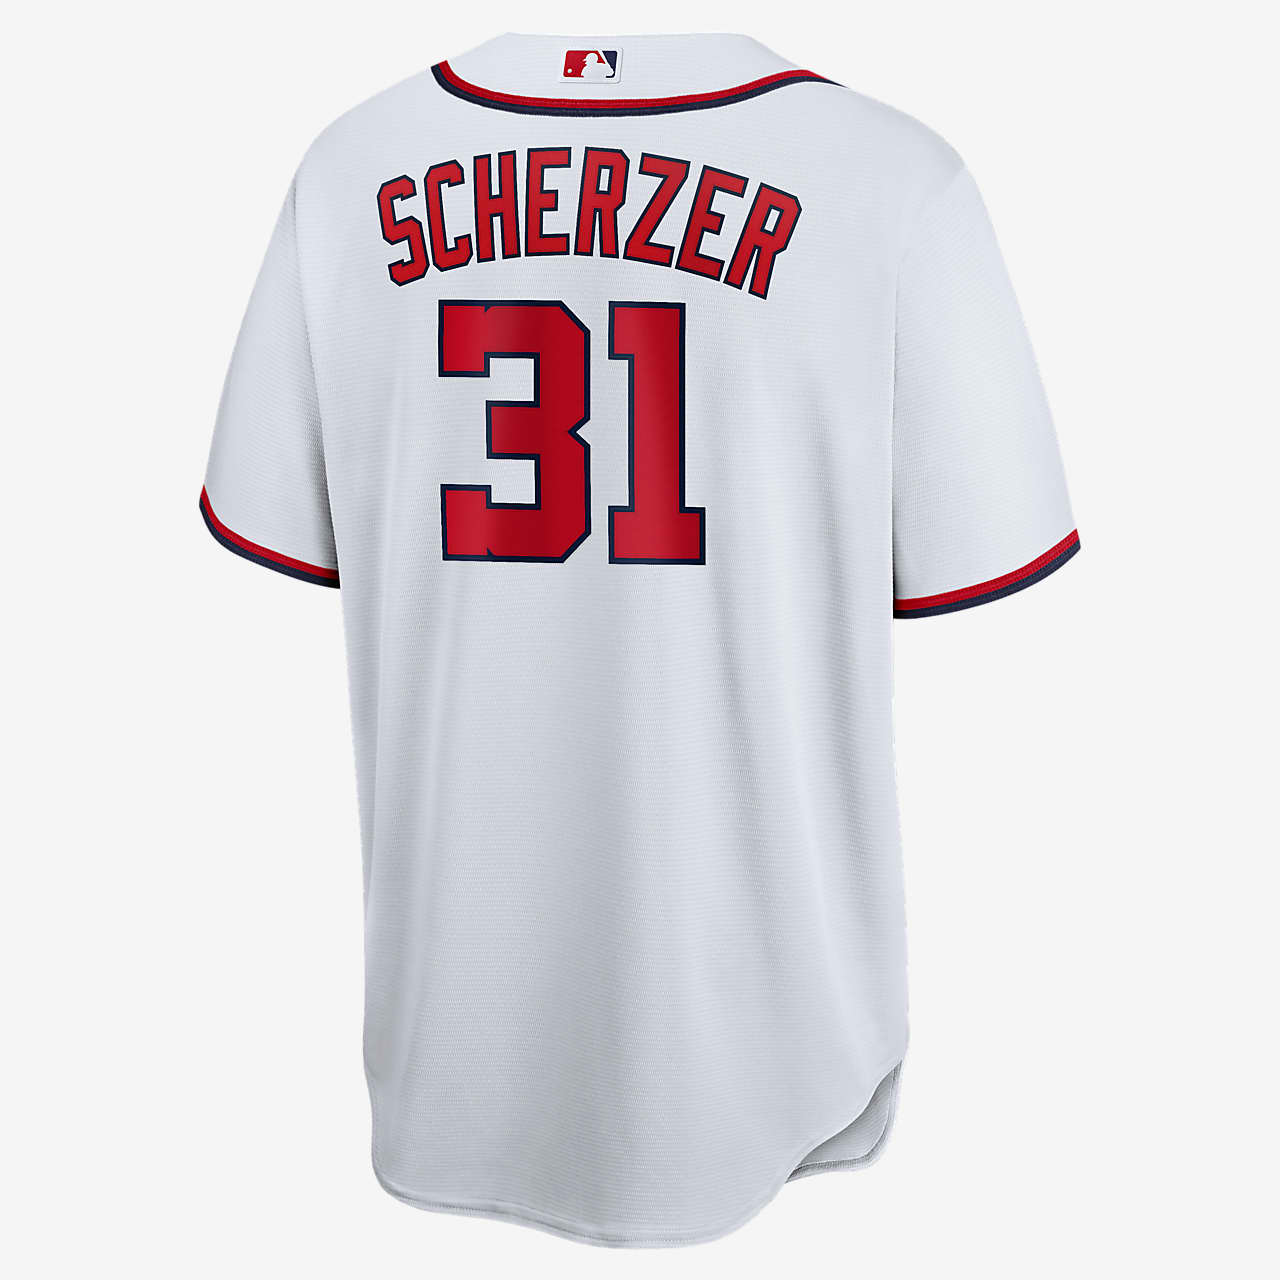 MLB Washington Nationals (Max Scherzer 